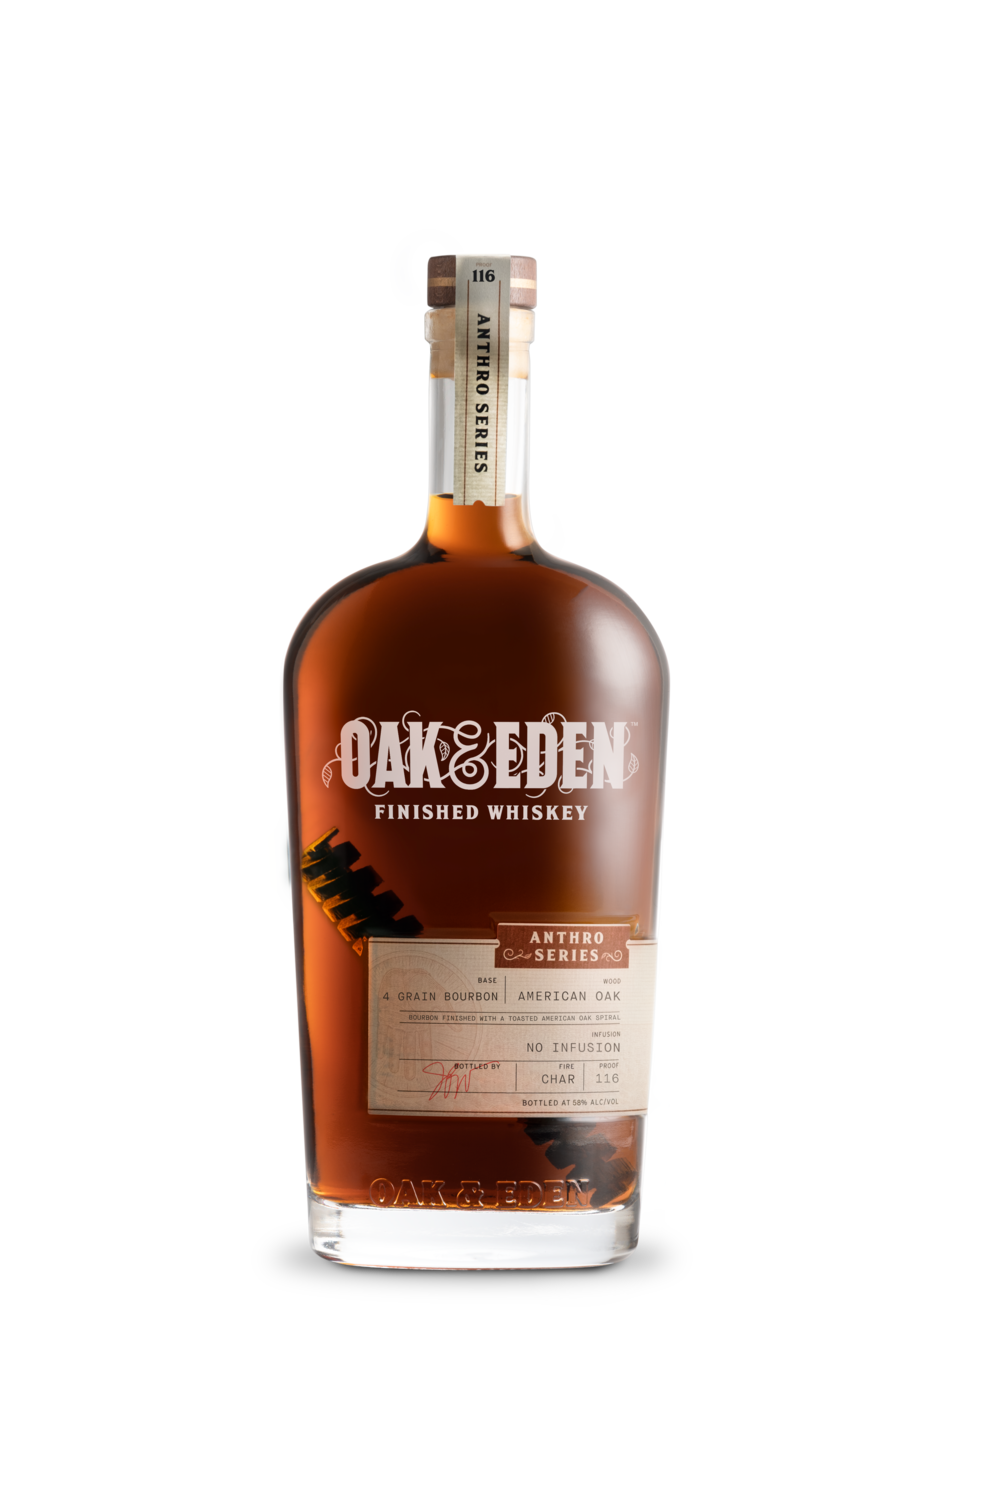 Oak & Eden | Anthro Series: John Paul White 4 Grain Bourbon Finished Whiskey at CaskCartel.com